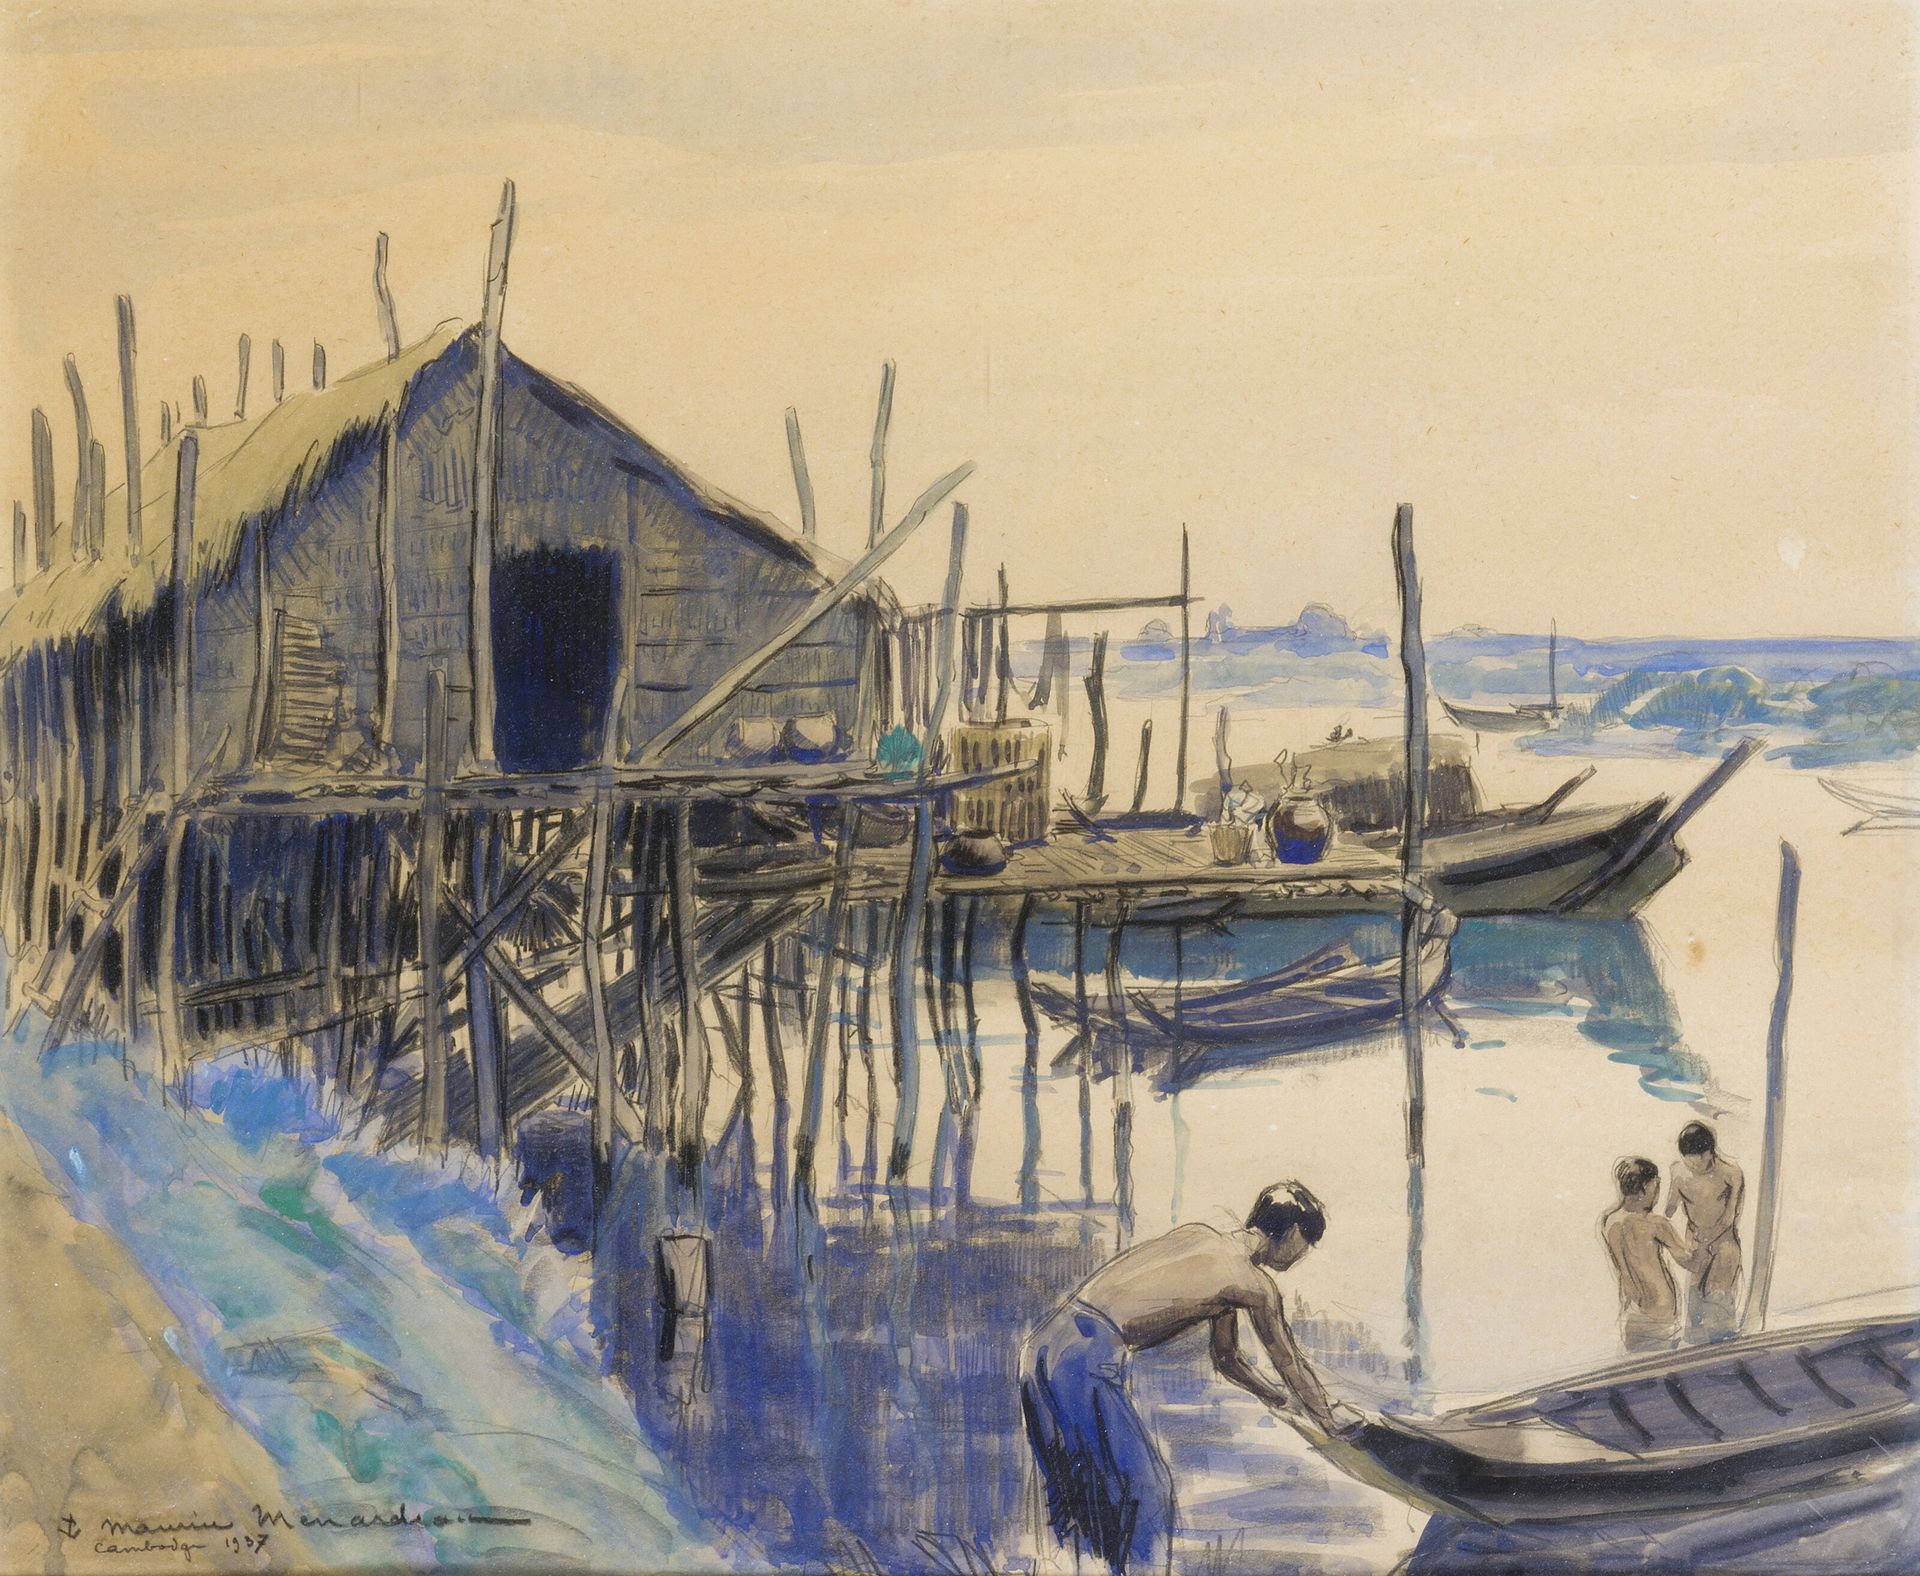 Null 莫里斯-梅纳多(1897-1977)

巴黎美术学院

海军官方画家

高跷上的村庄。柬埔寨 1937年。

装帧纸上的水彩画，有签名、日期和左下角的&hellip;